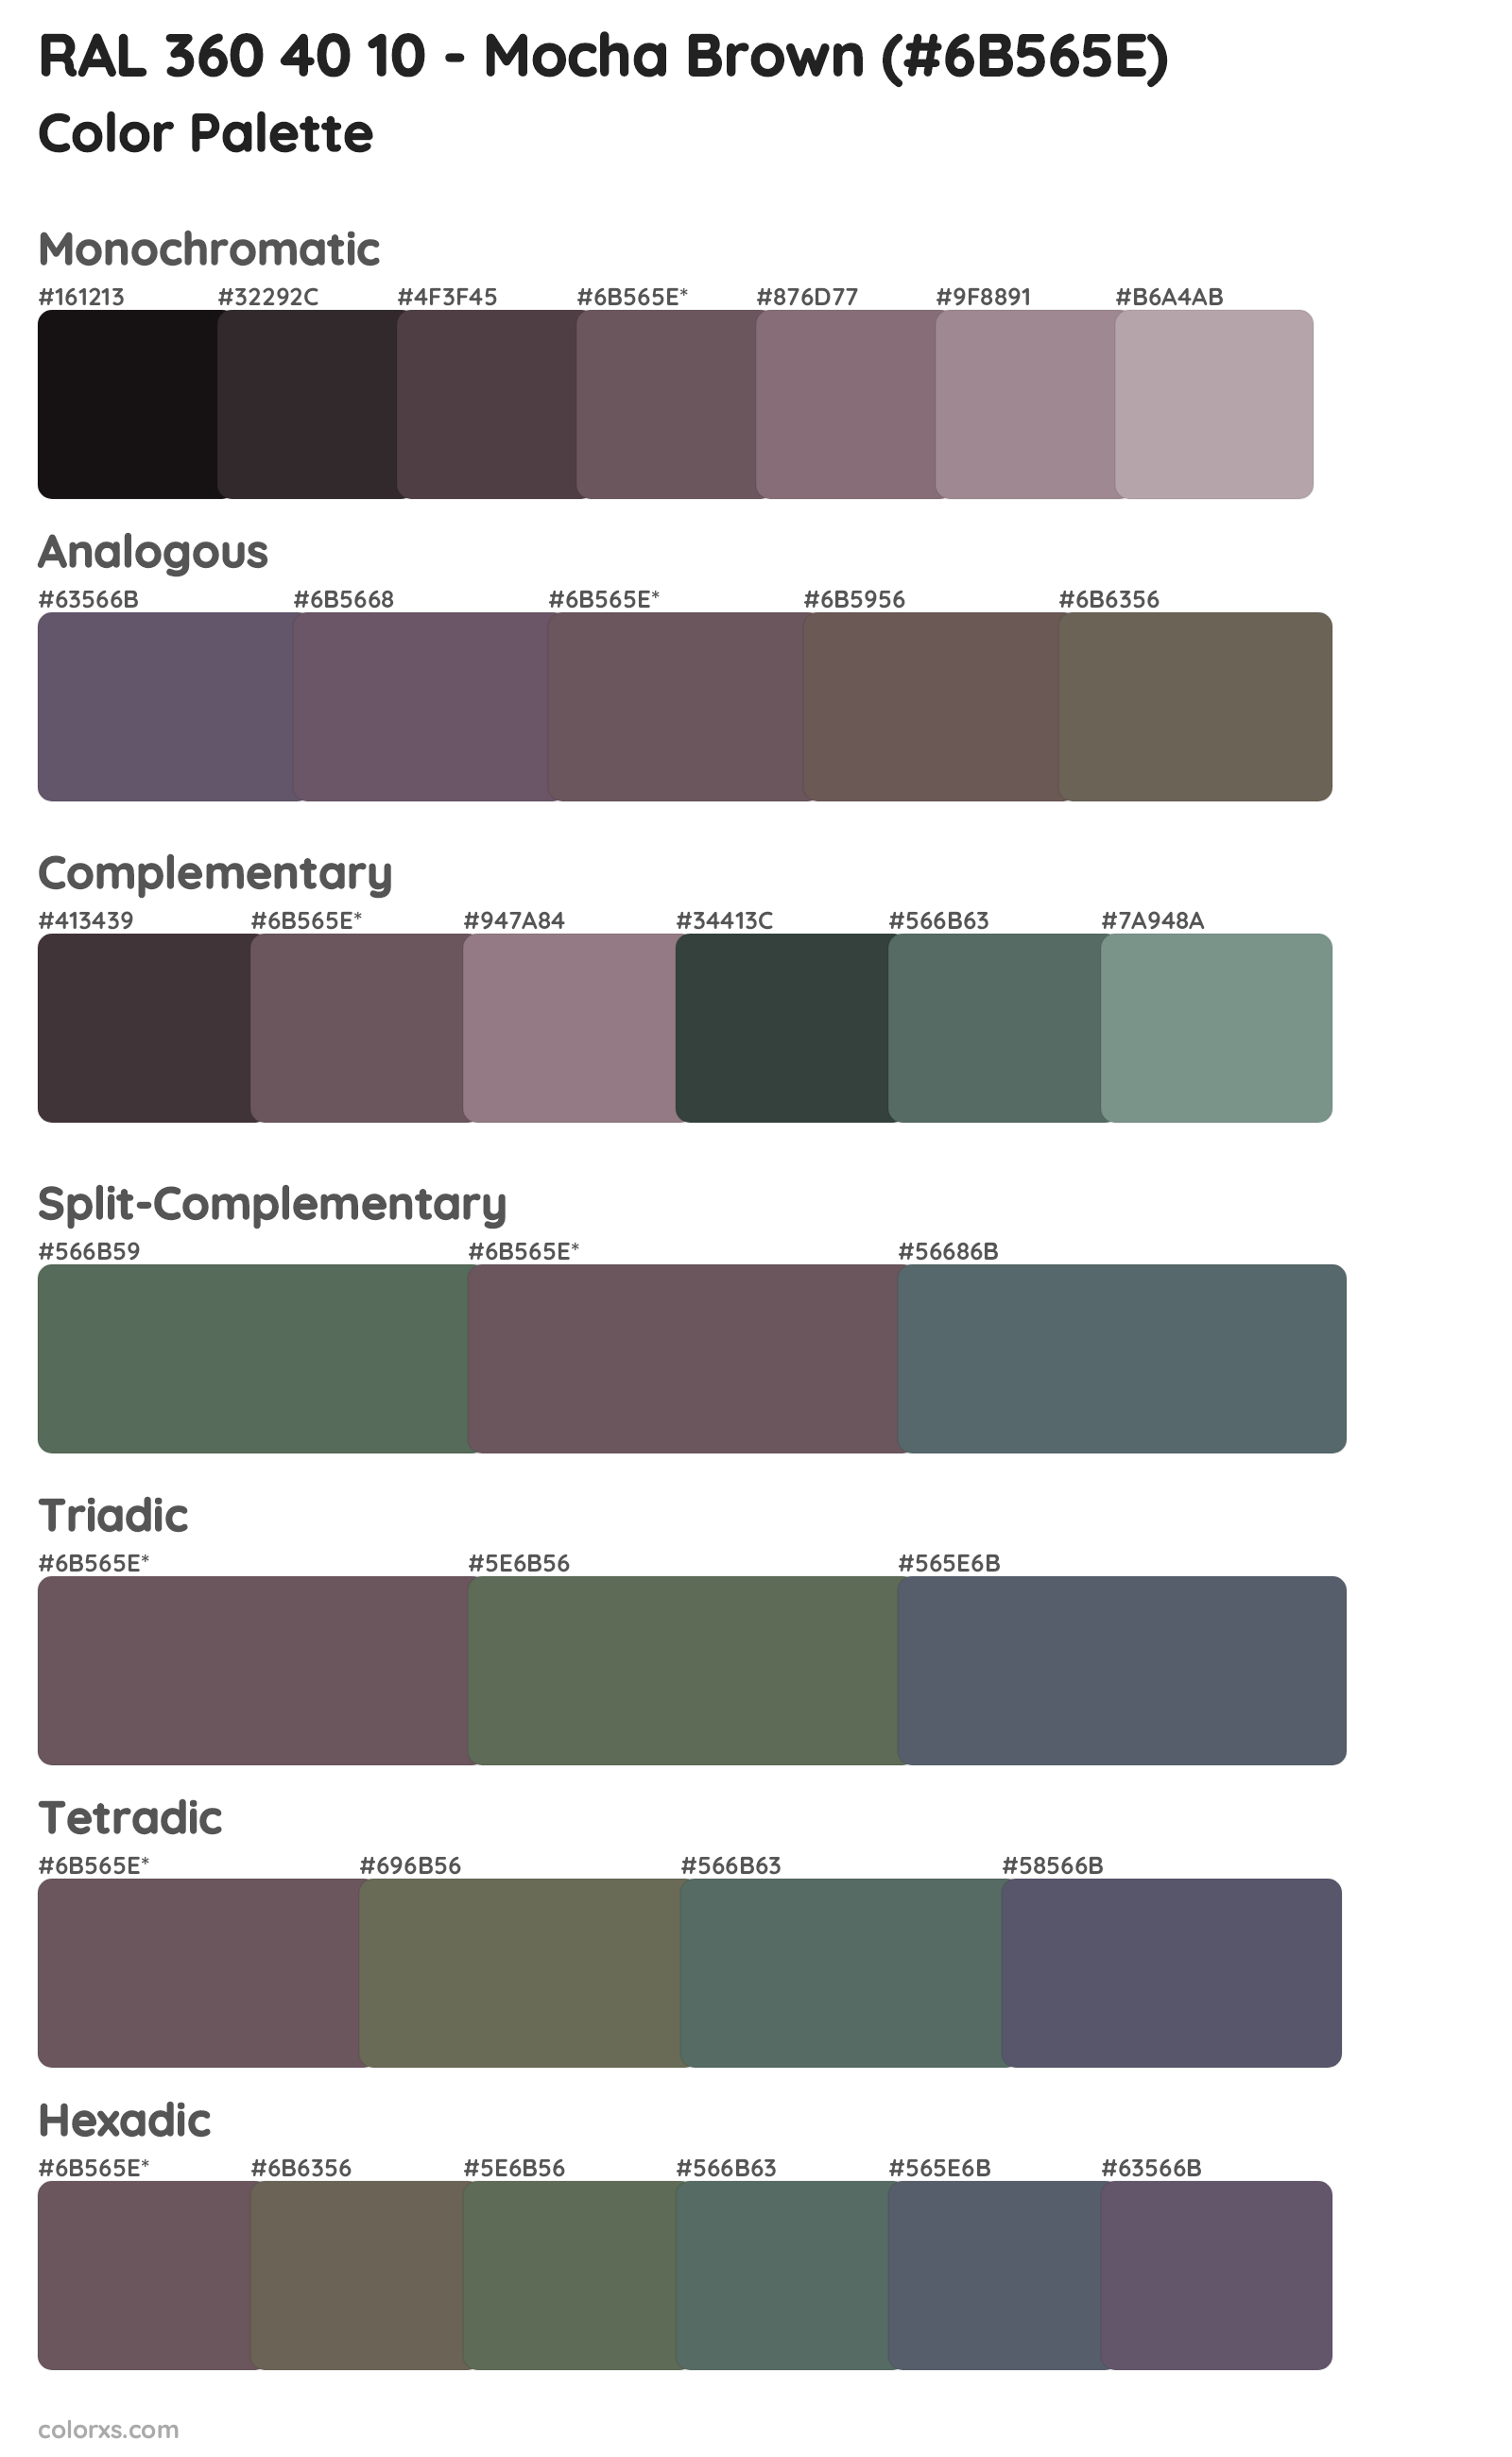 RAL 360 40 10 - Mocha Brown Color Scheme Palettes